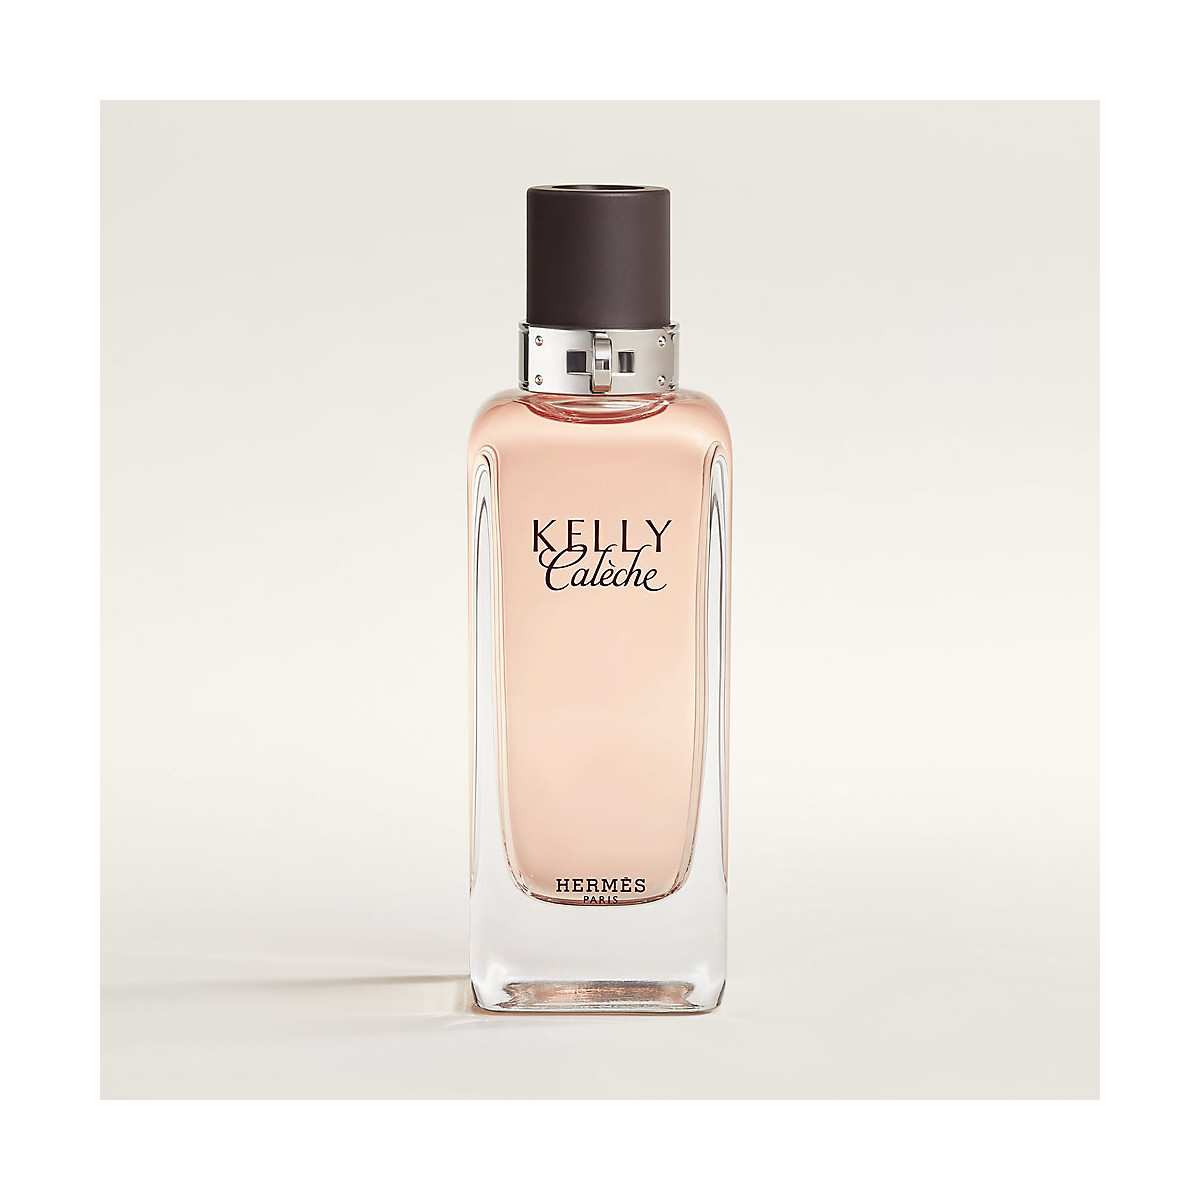 Beauté Femme Eau de parfum Hermès Paris Kelly Caleche - eau de parfum - 100ml - vaporisateur Kelly Caleche - perfume - 100ml - spray